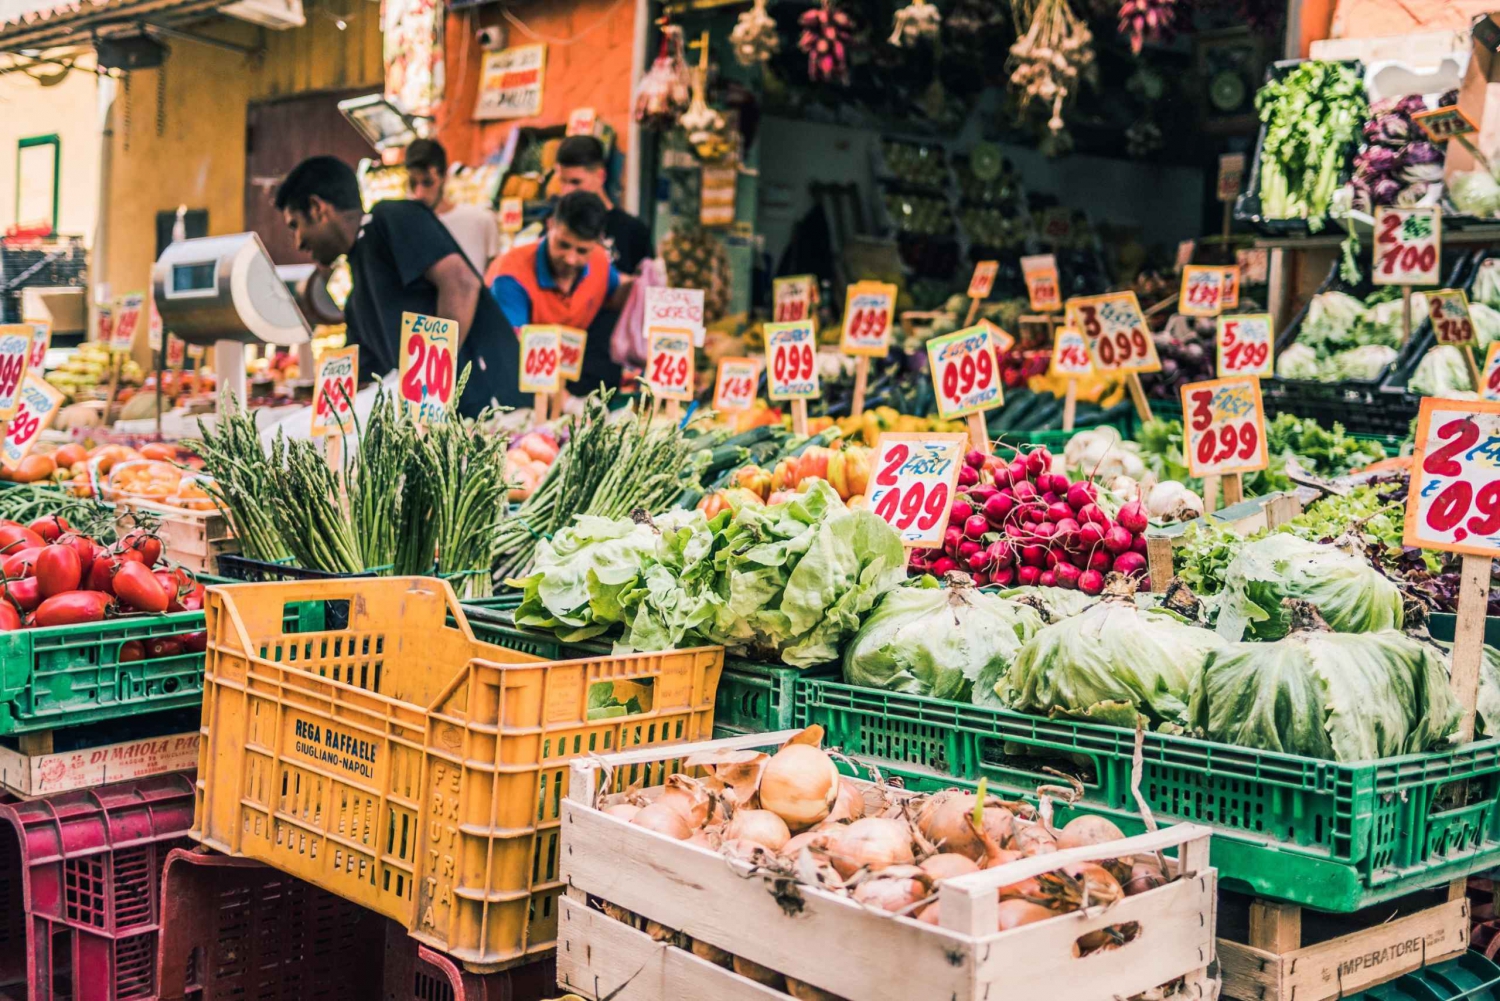 Taormina: markttour met kookcursus in lokaal huis